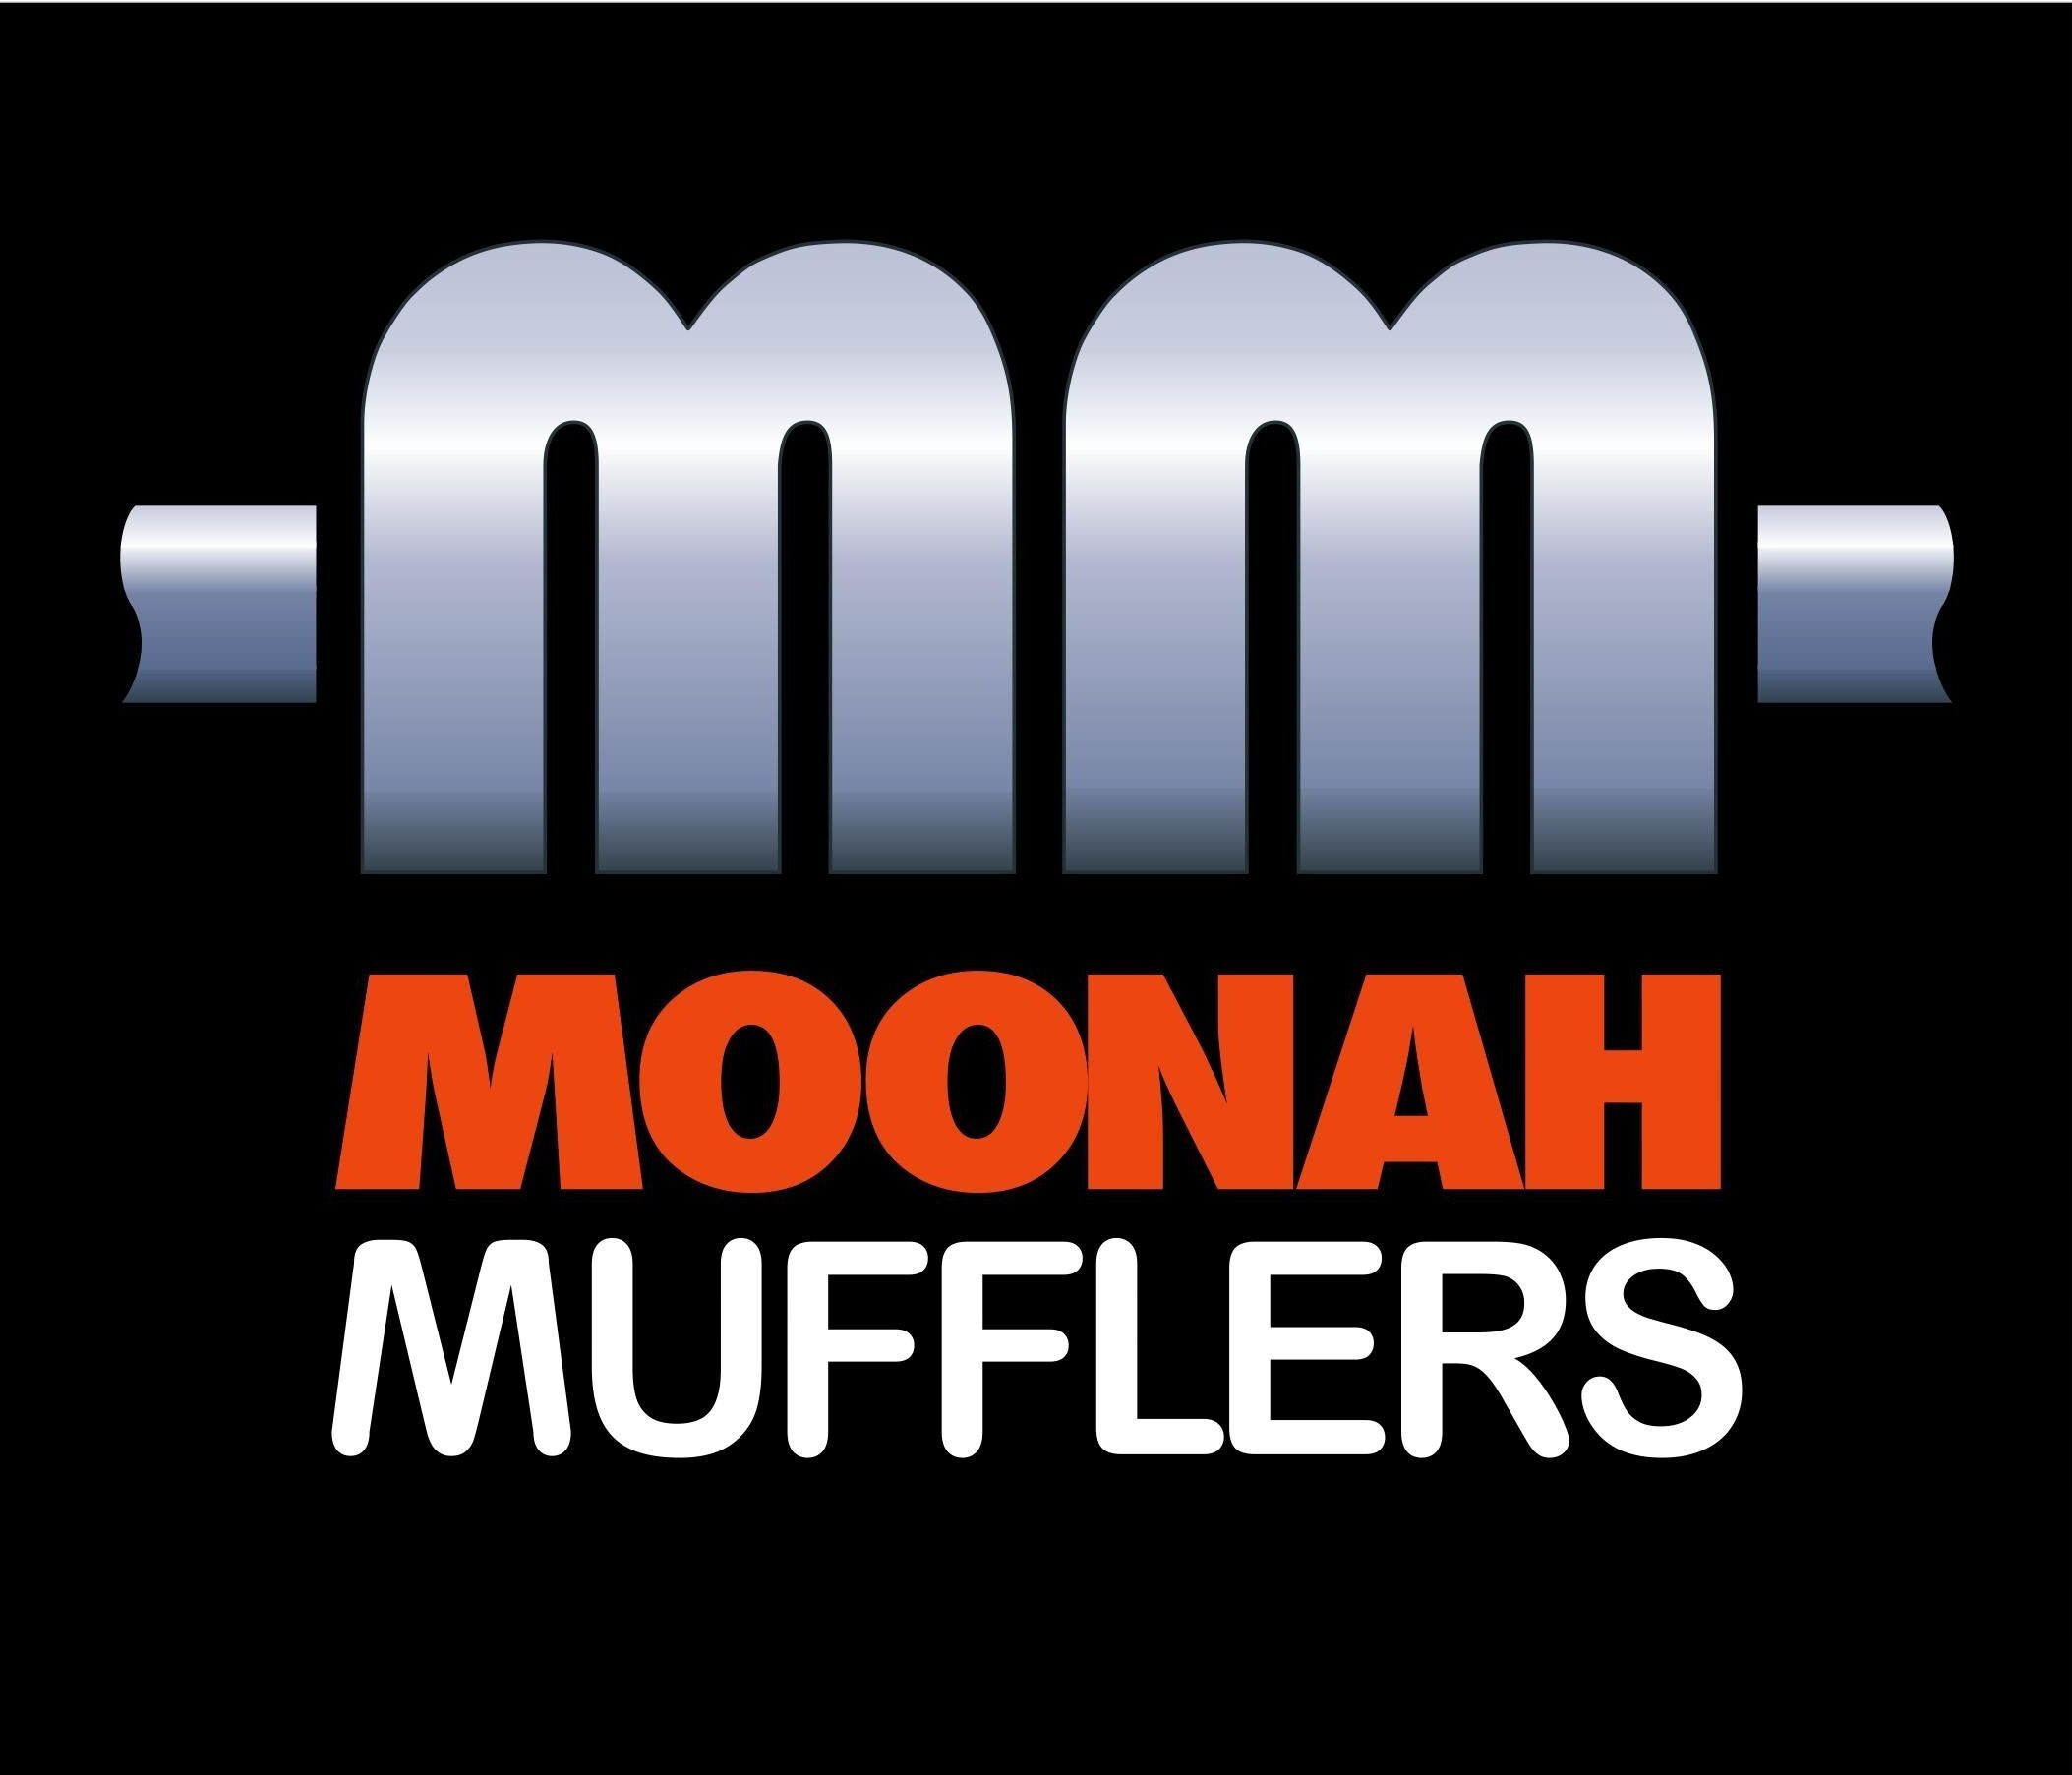 Moonah Mufflers